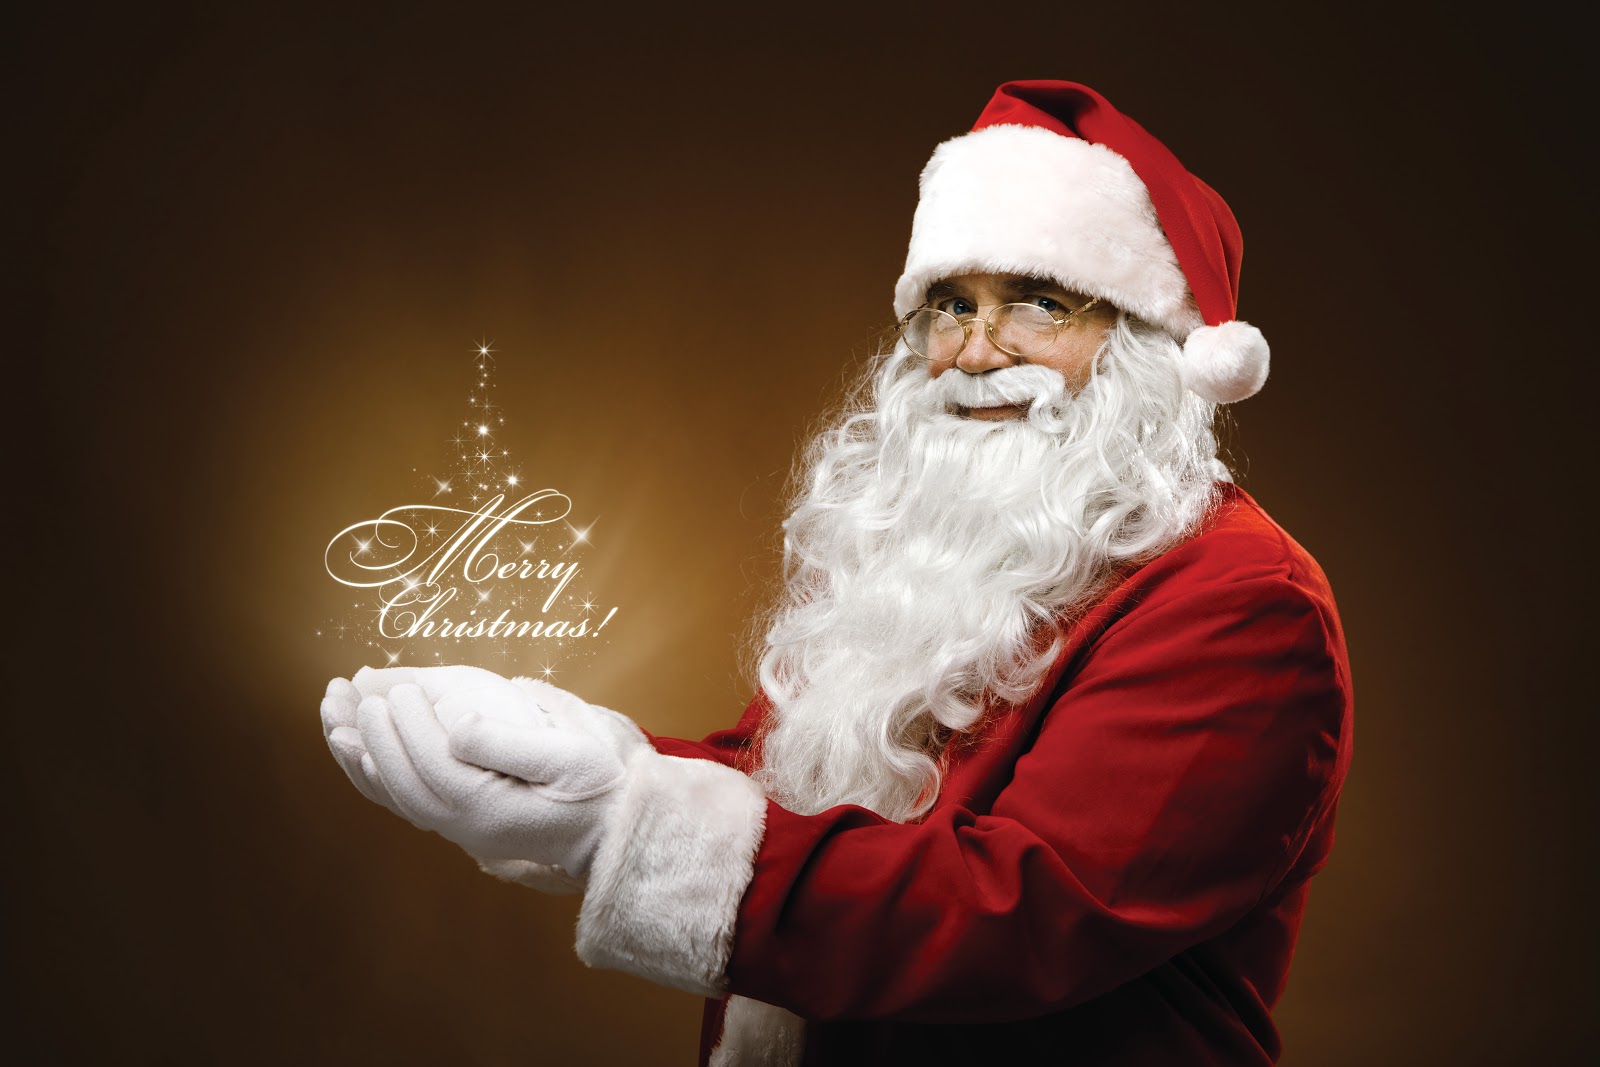 صور كروت معايدة مرسوم عليها بابا نويل 2014 , صور بابا نويل للتهاني جديدة وحصرية 2014